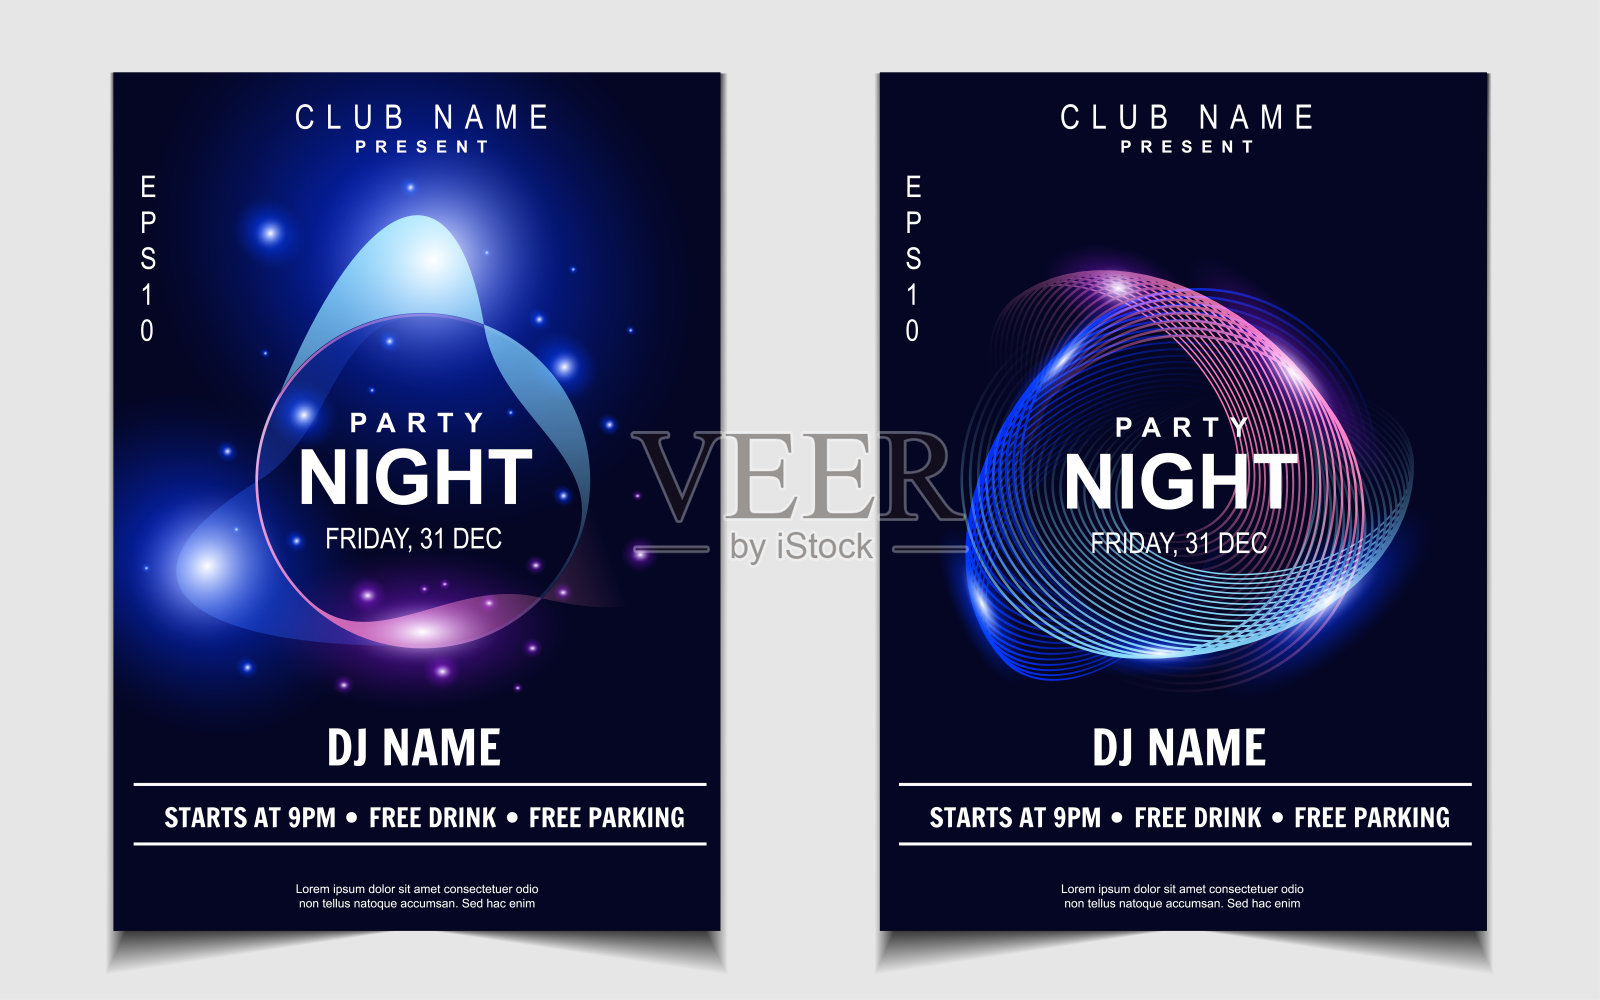 夜间舞会电子和音乐封面设计模板背景与优雅风格霓虹灯颜色。彩色灯光风格矢量设计模板素材